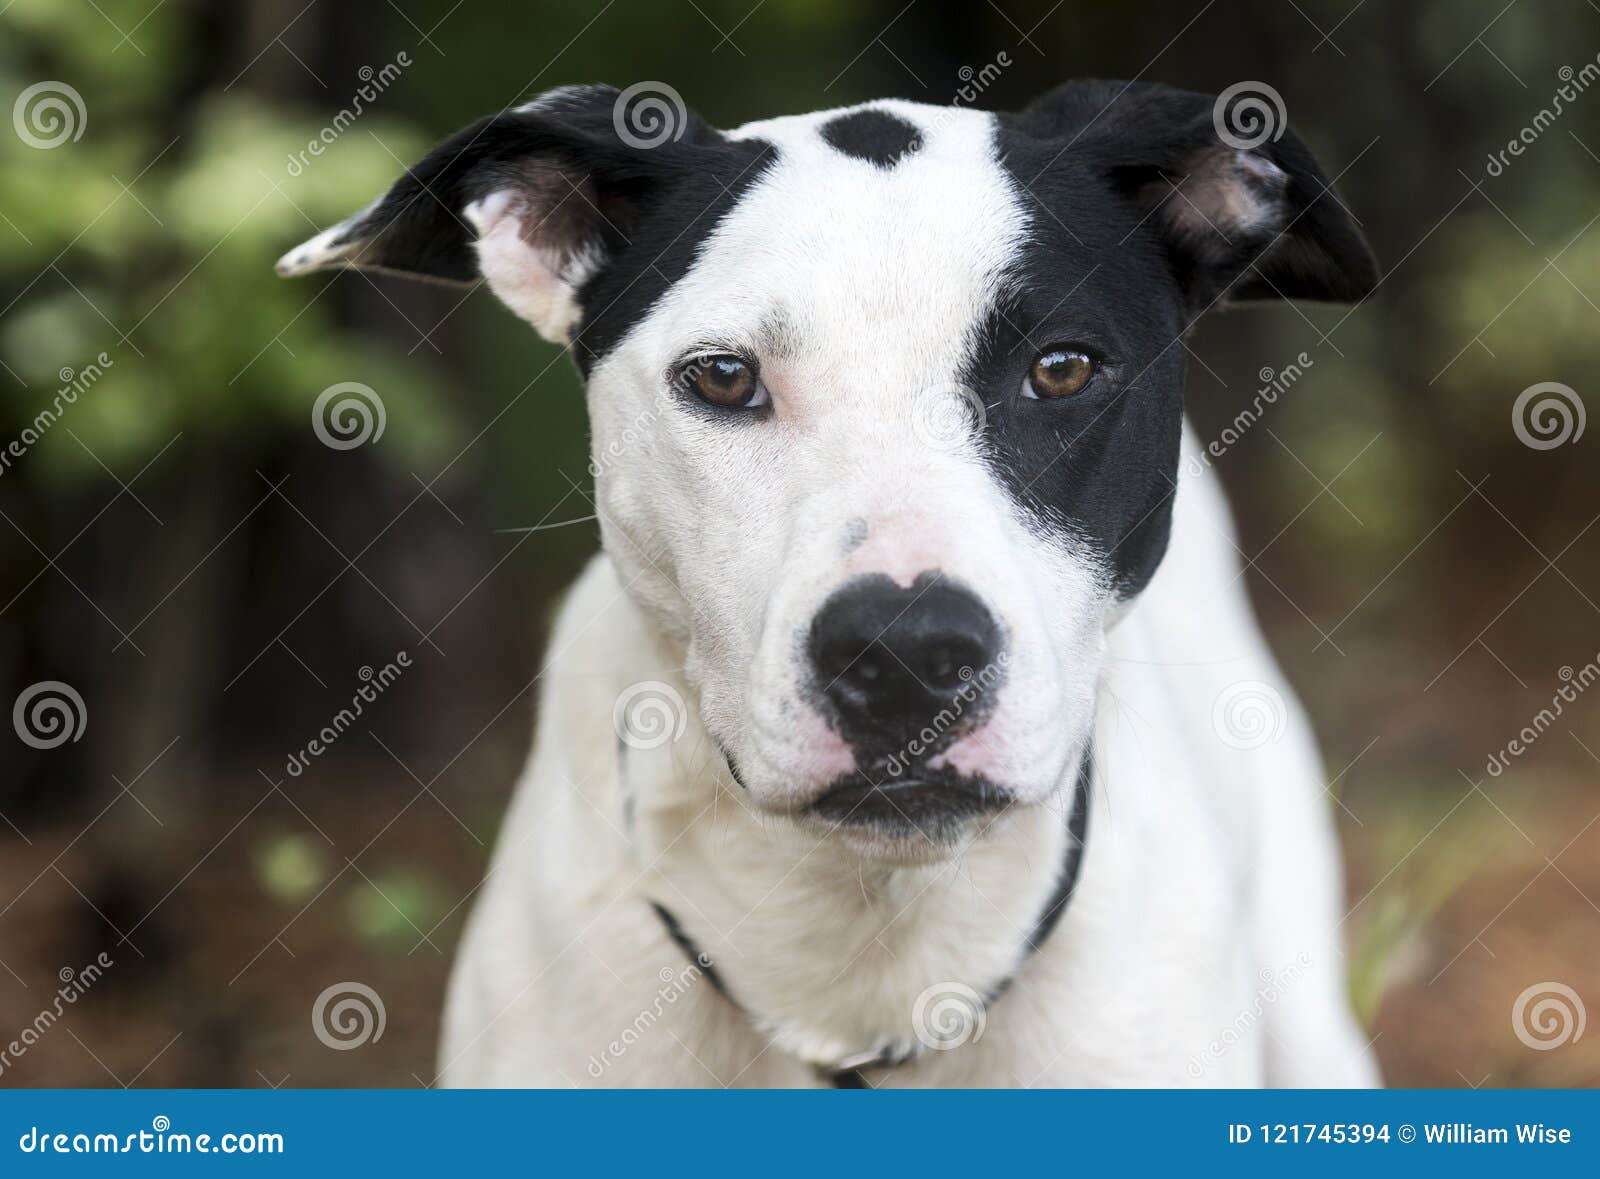 black and white mutt dog